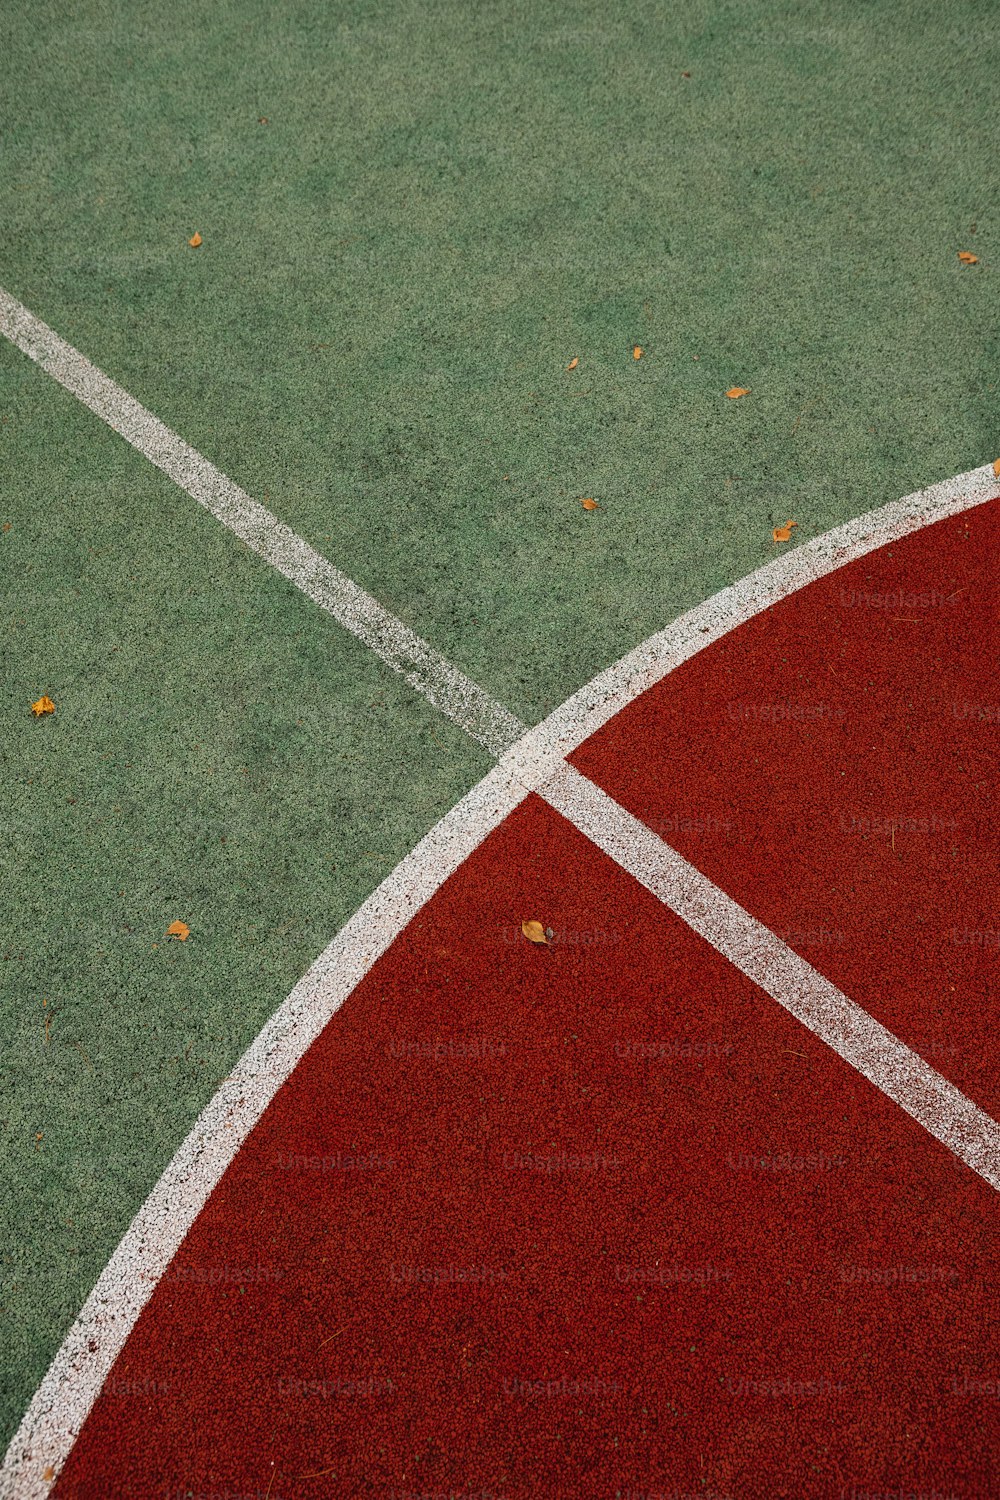 Un primer plano de una cancha de tenis con una raqueta de tenis